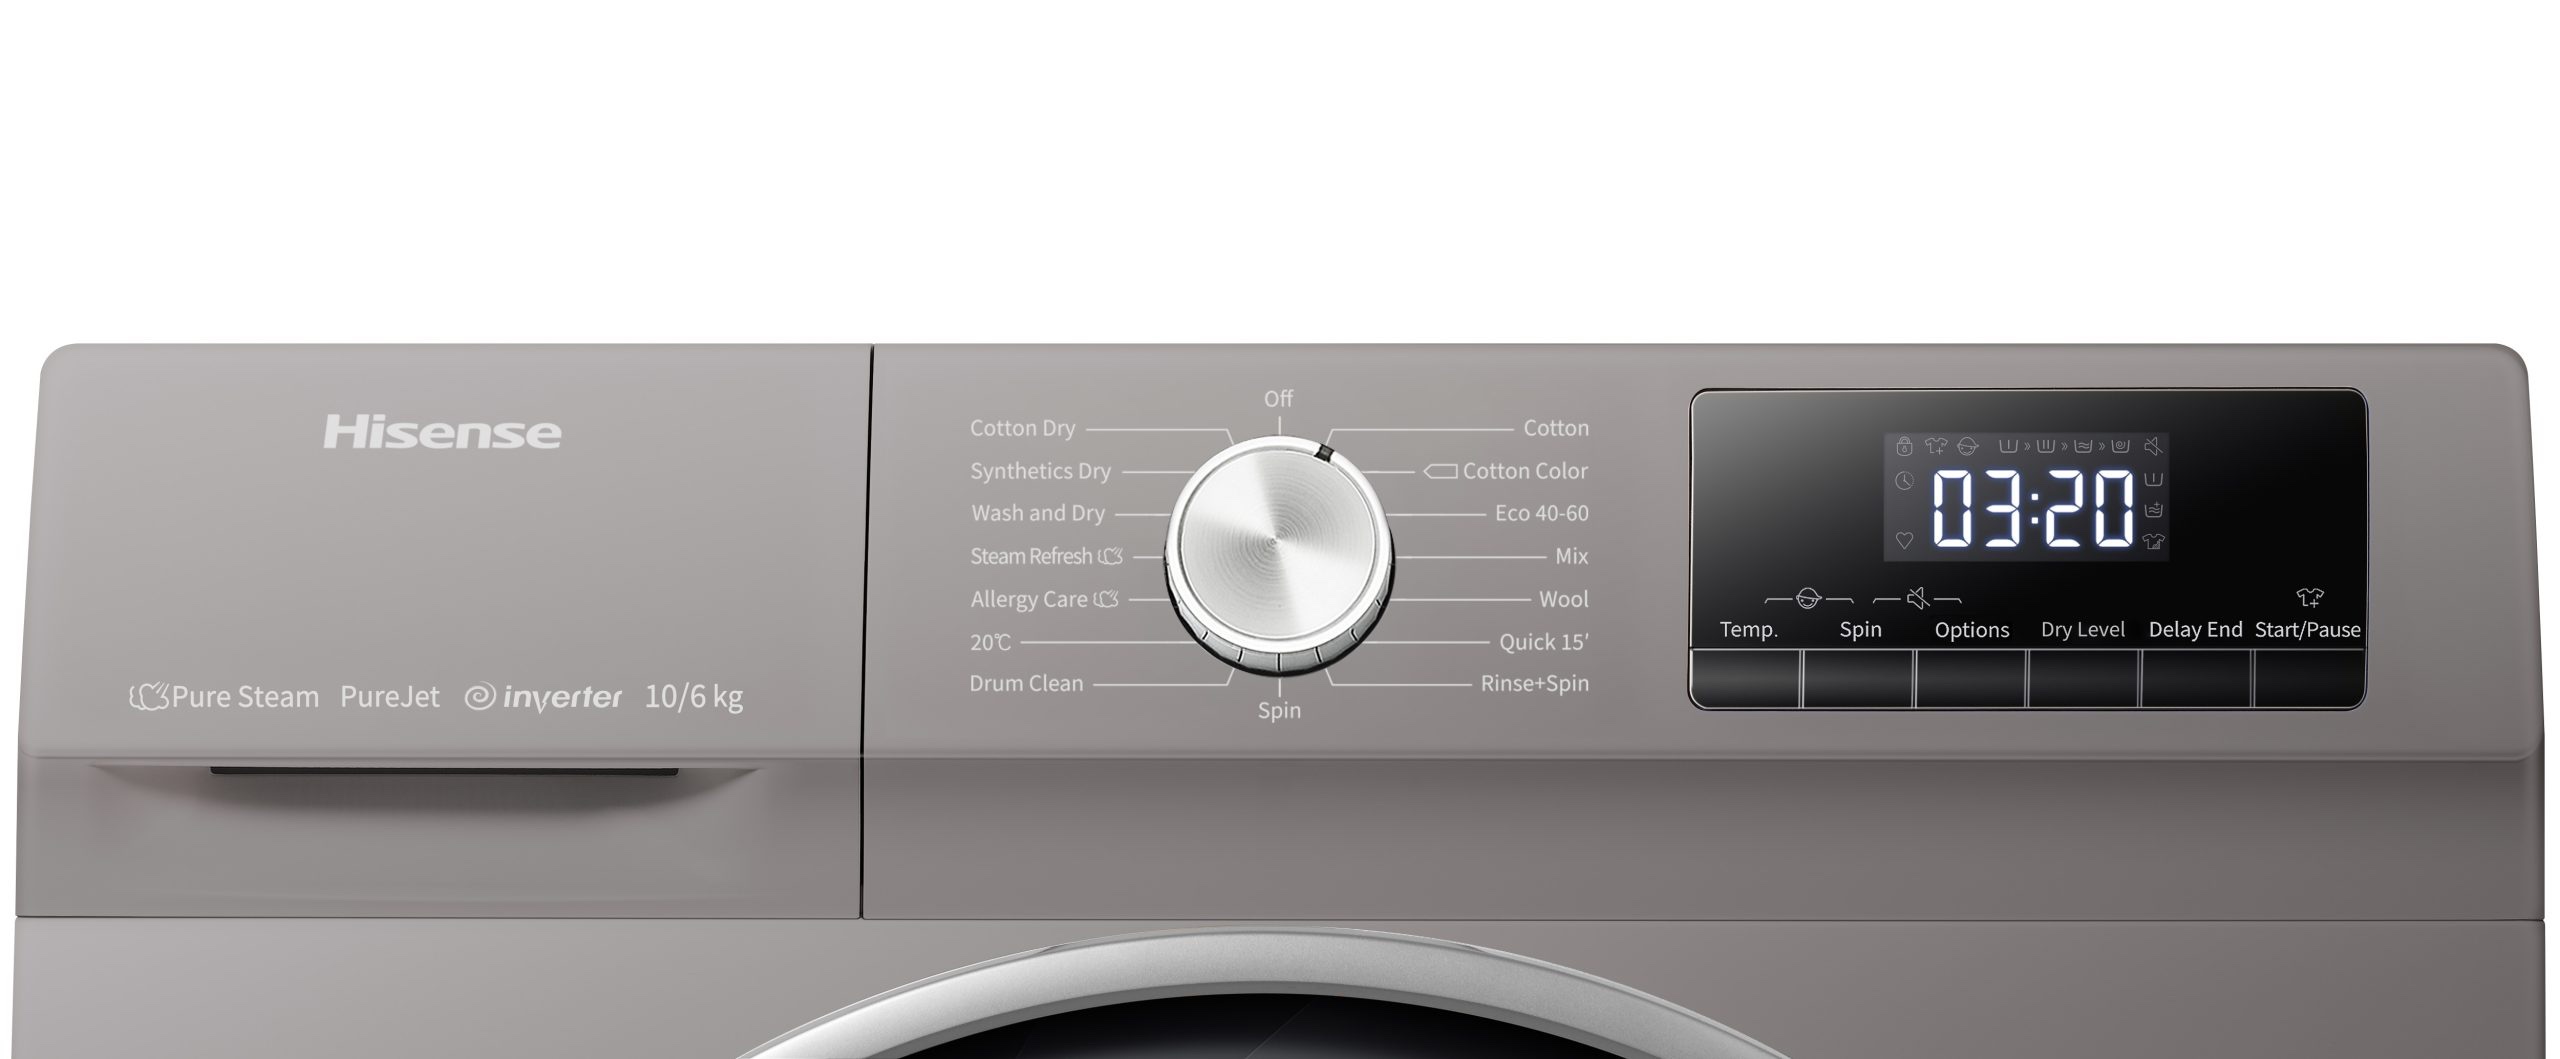 Como usar a função Delay End na máquina de lavar roupa?